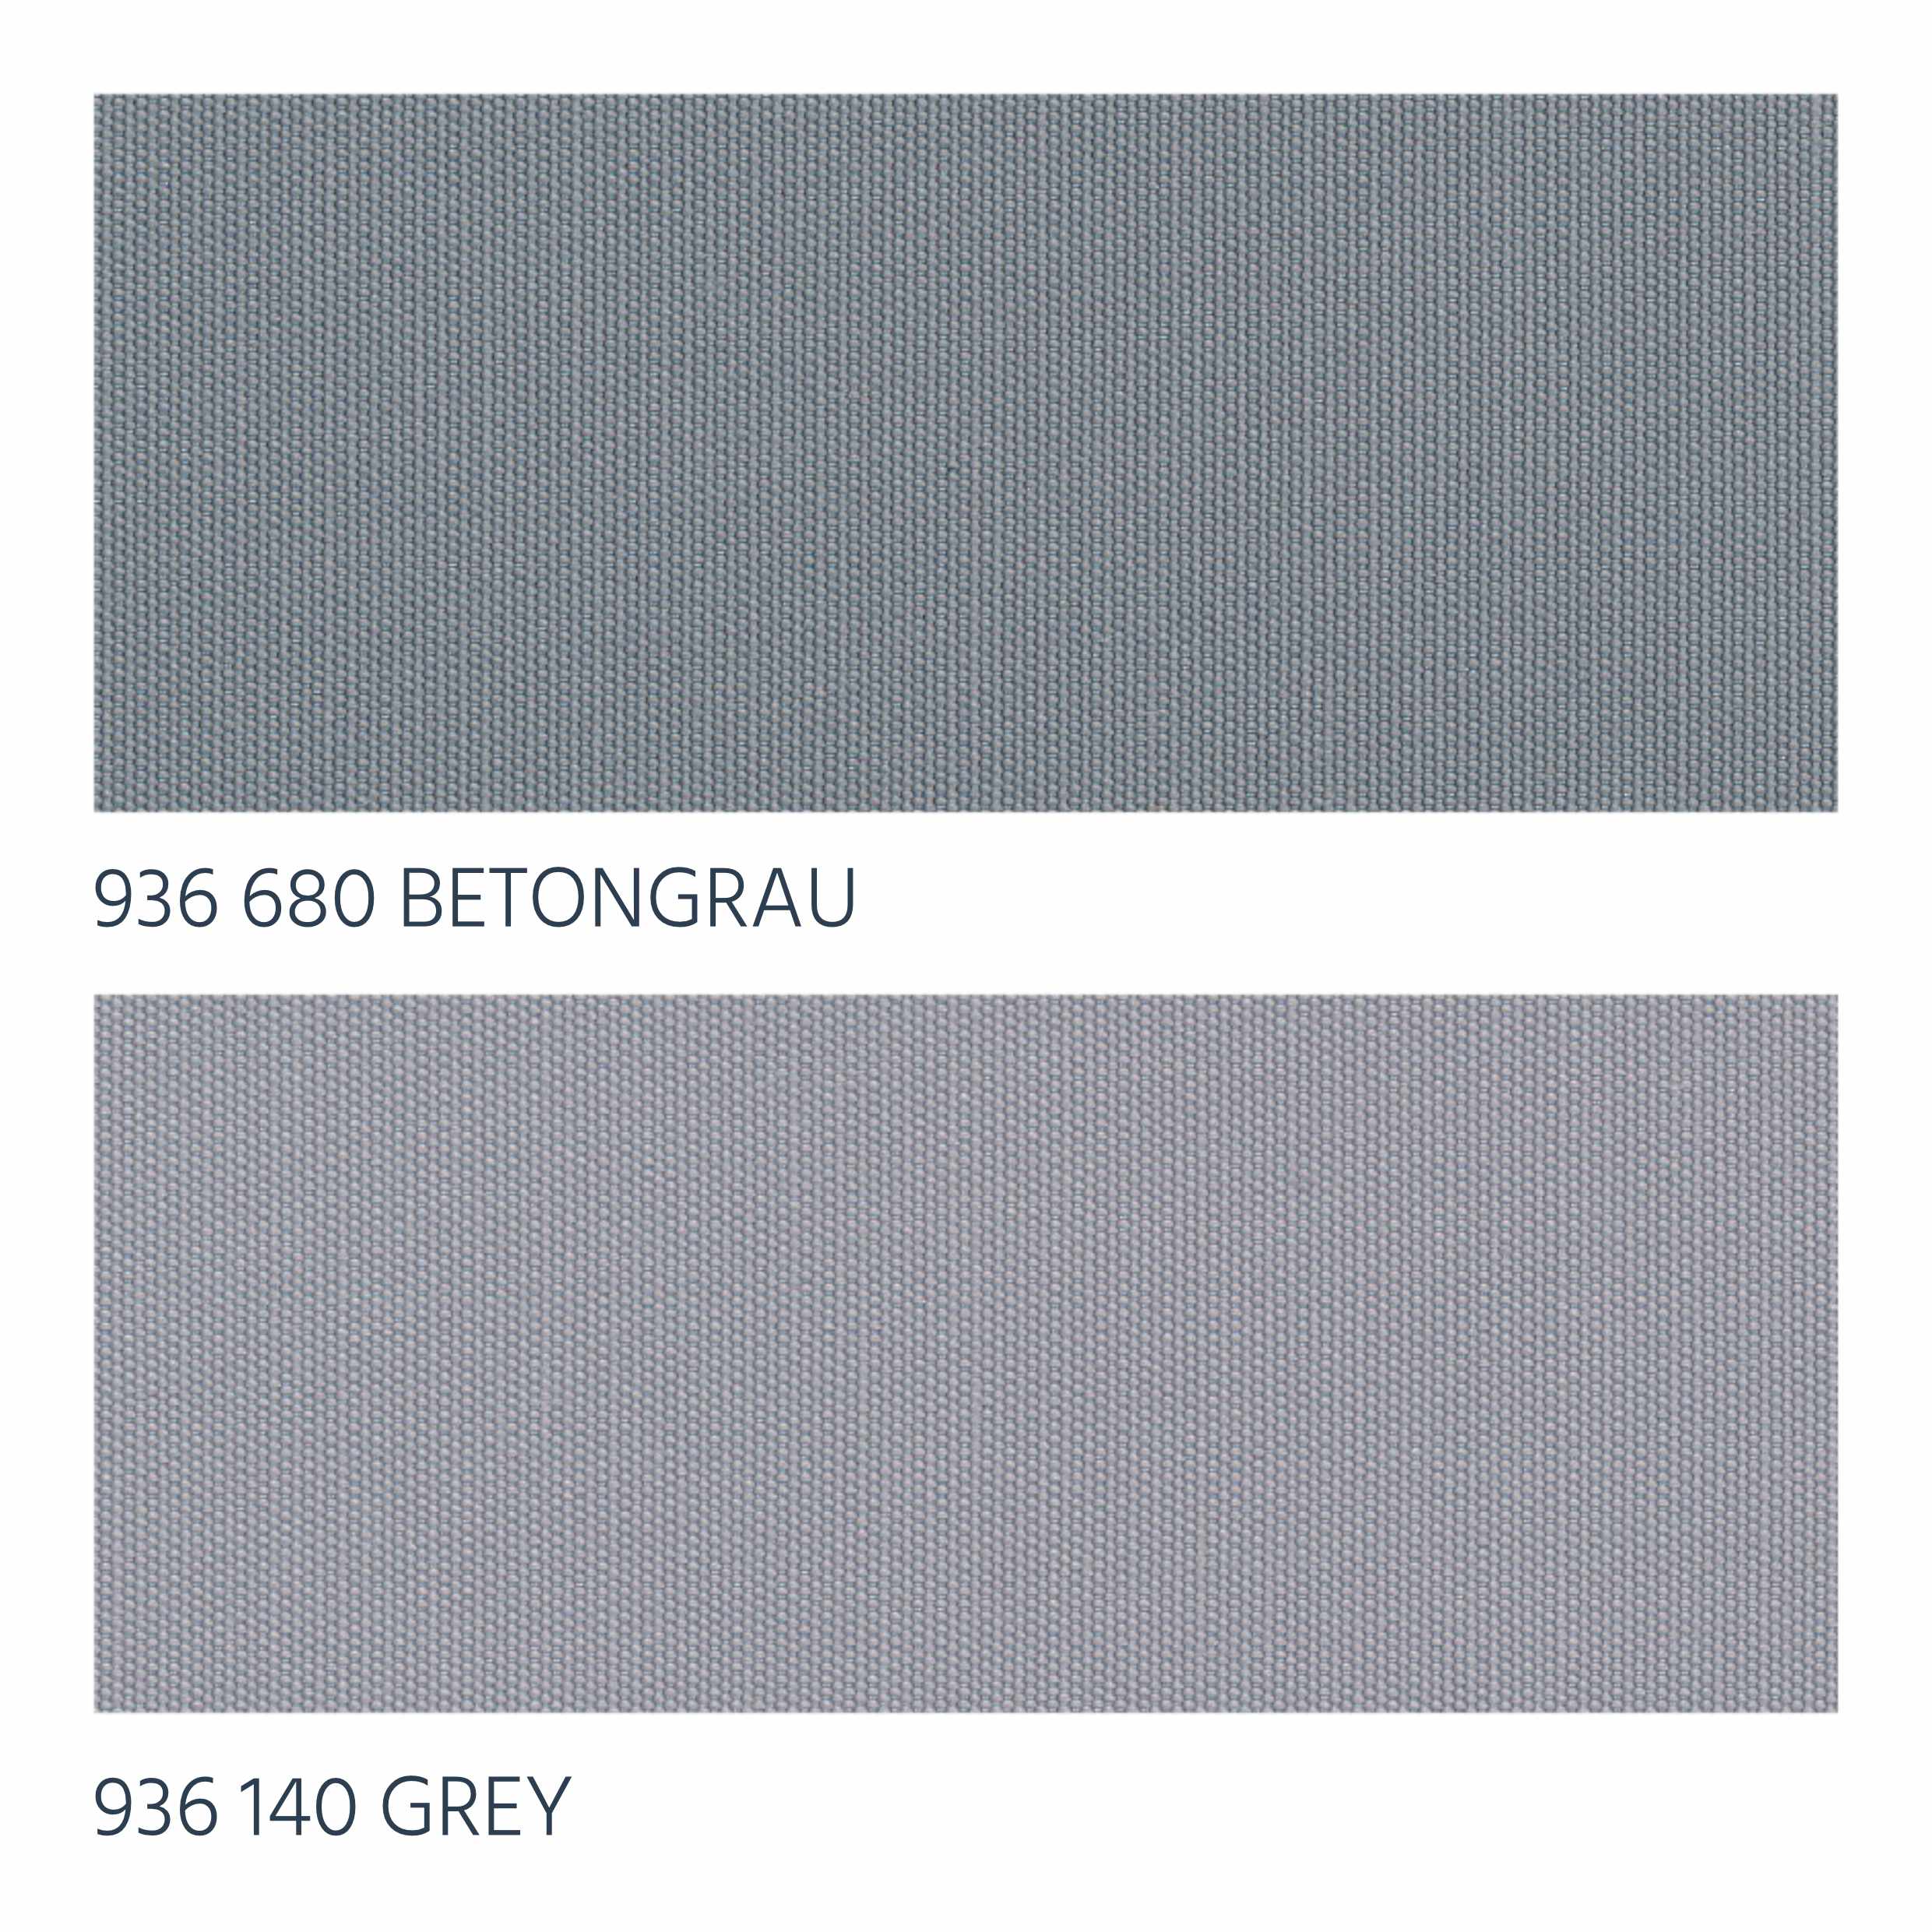 Betongrau & Grey